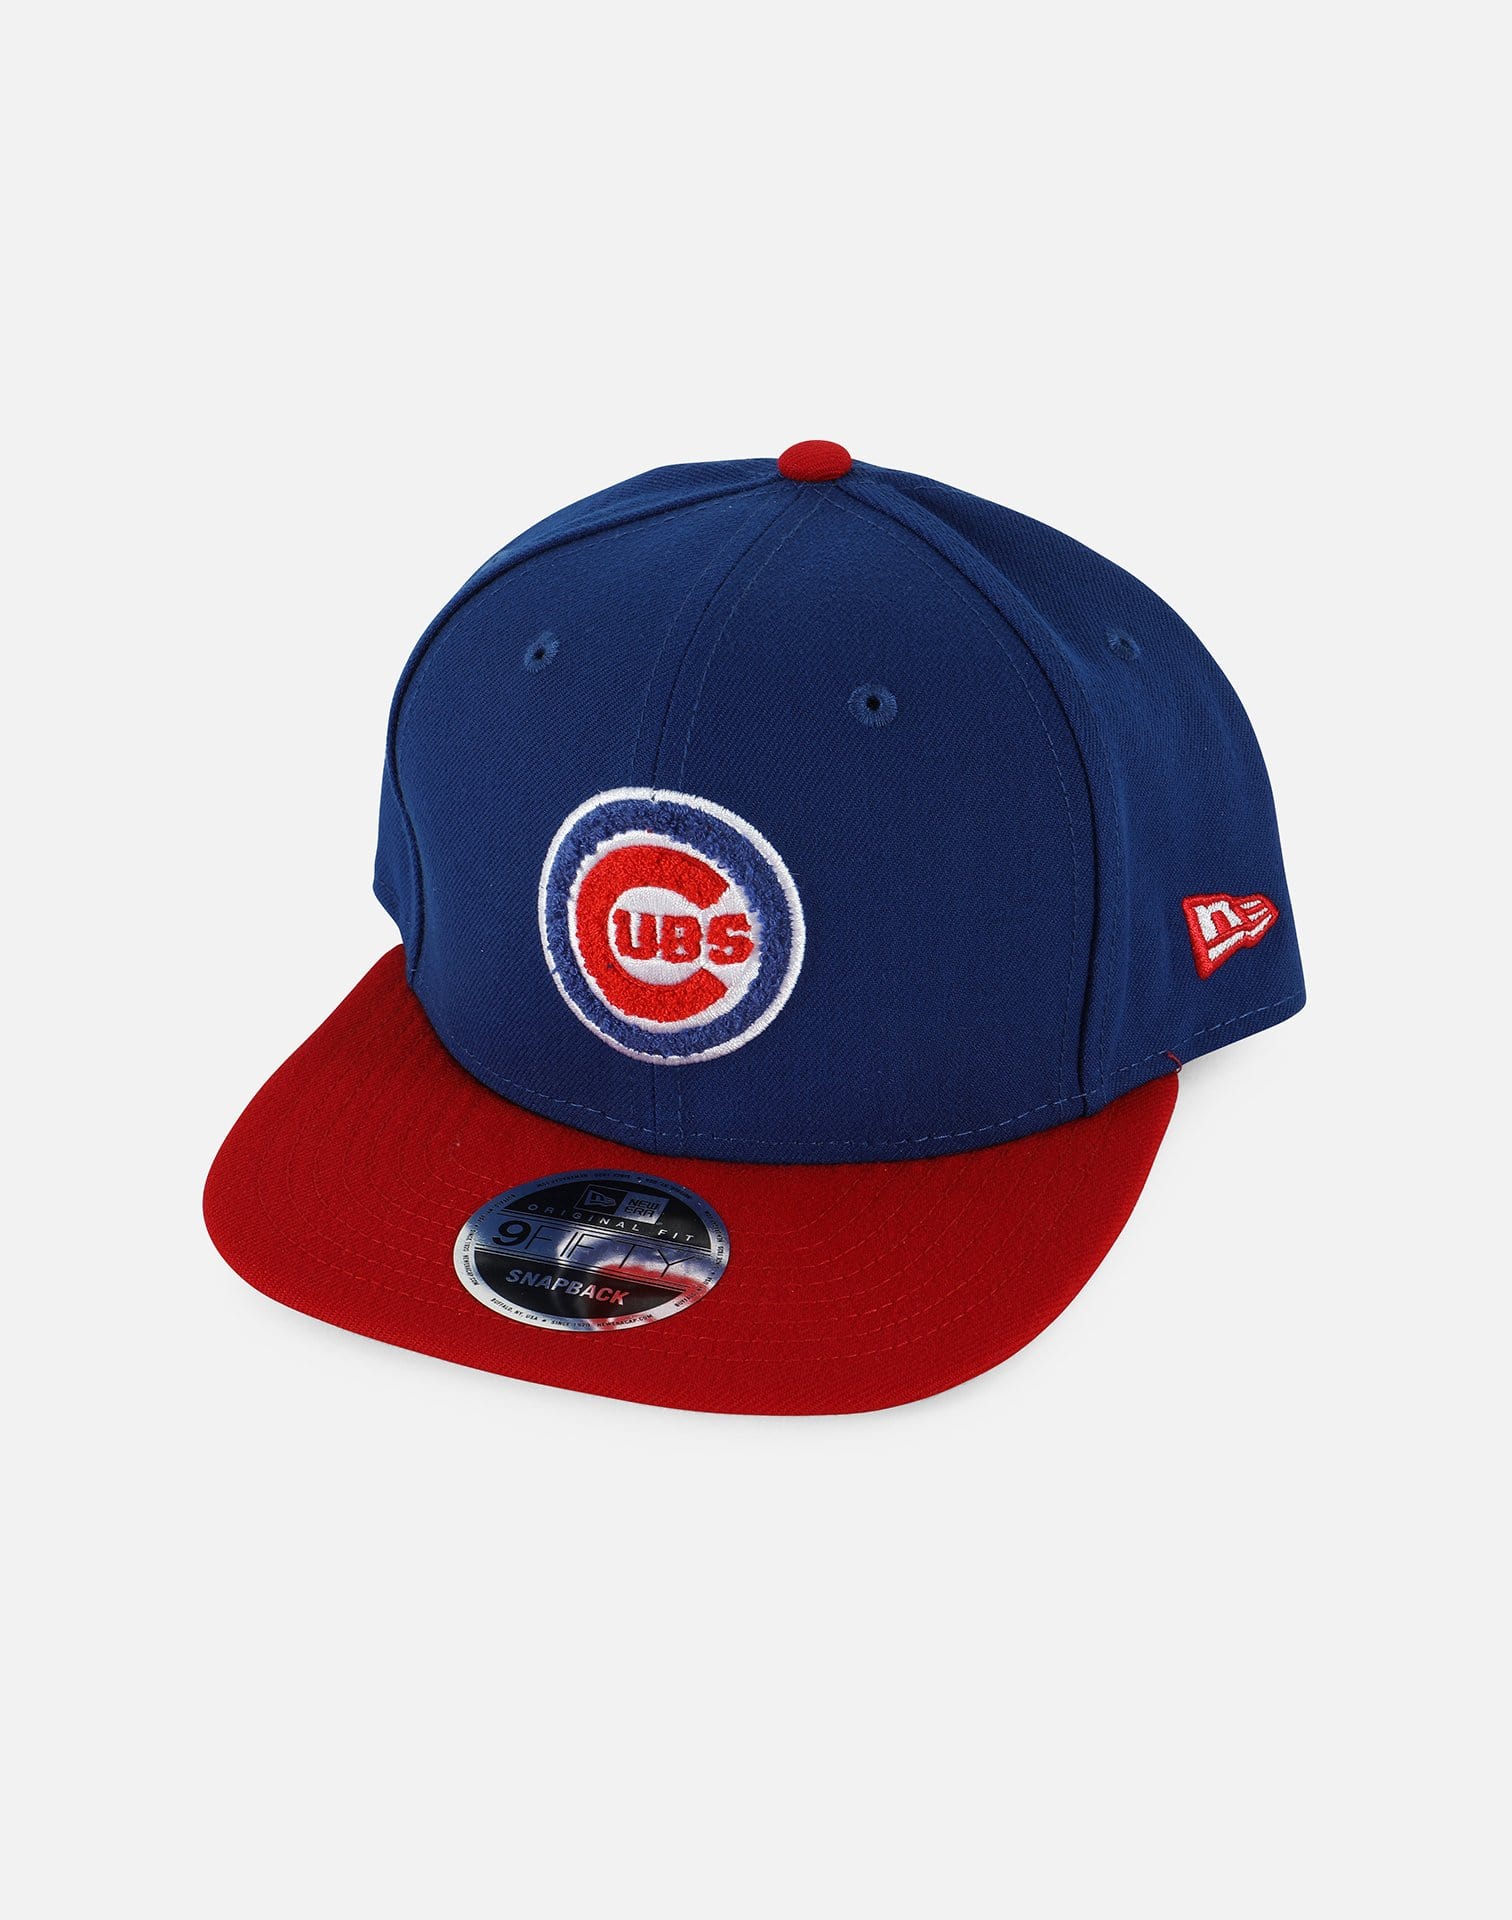 MLB CHICAGO CUBS SNAPBACK HAT – DTLR